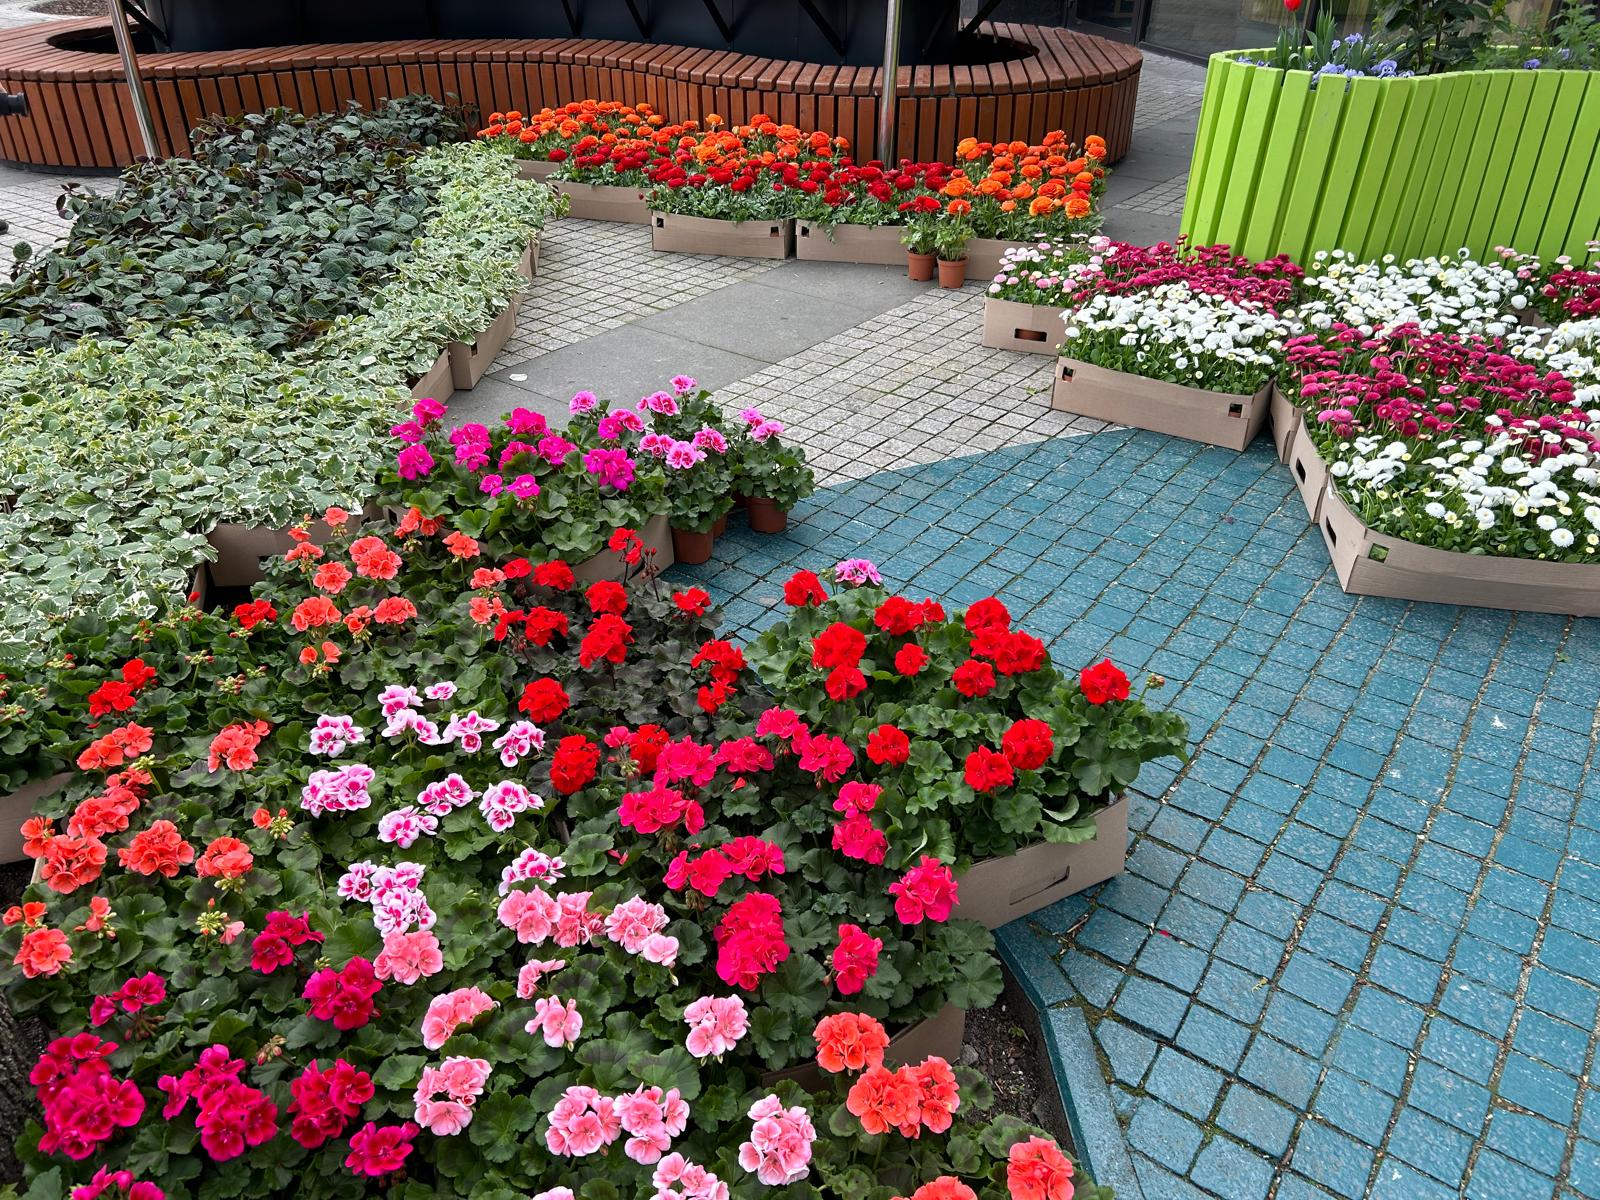 Na placu przed Galerią Posnania wystawiono różnokolorowe sadzonki kwiatów - pelargonie, jaskry, stokrotki, komarzyce. - grafika artykułu